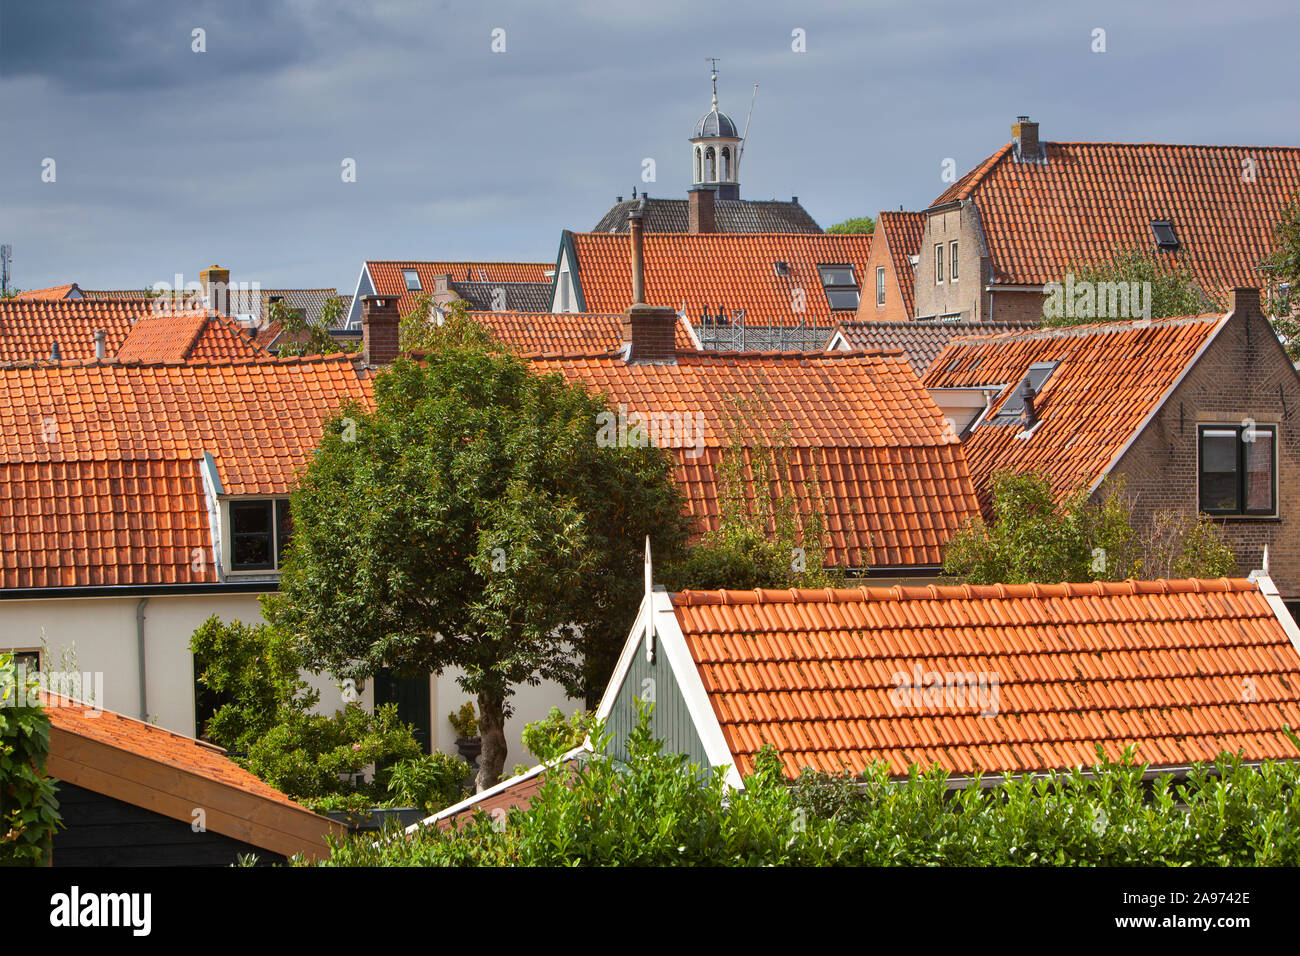 Die traditionellen roten Ziegeldächern und der Turm des Rathauses in Nieuwpoort in den Niederlanden Stockfoto